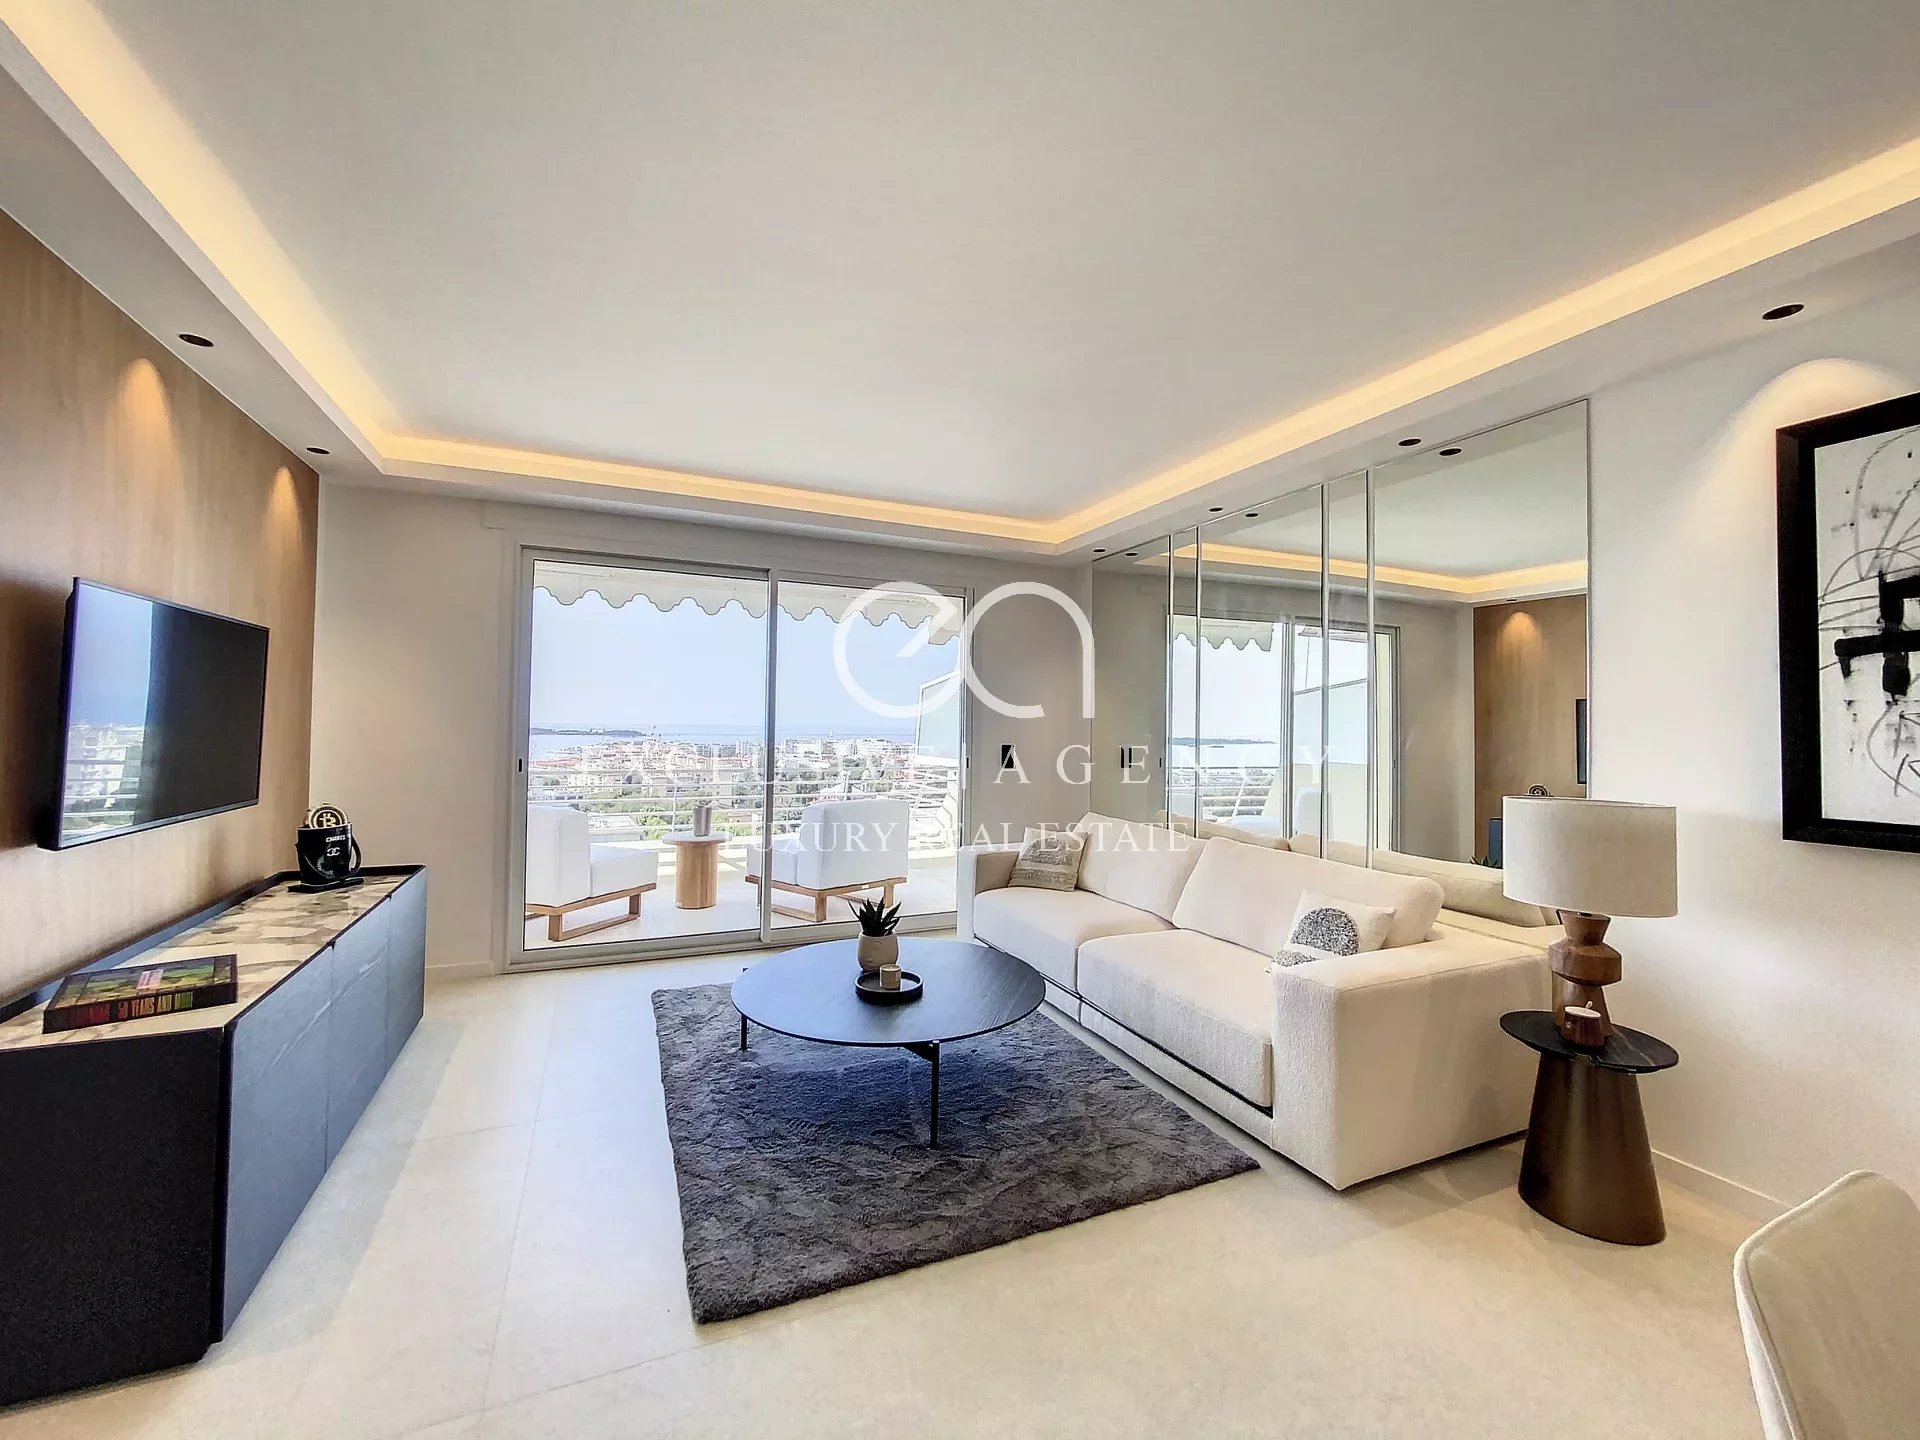 Cannes Basse Californie 3 kamers 70m² gerenoveerd panoramisch uitzicht op zee